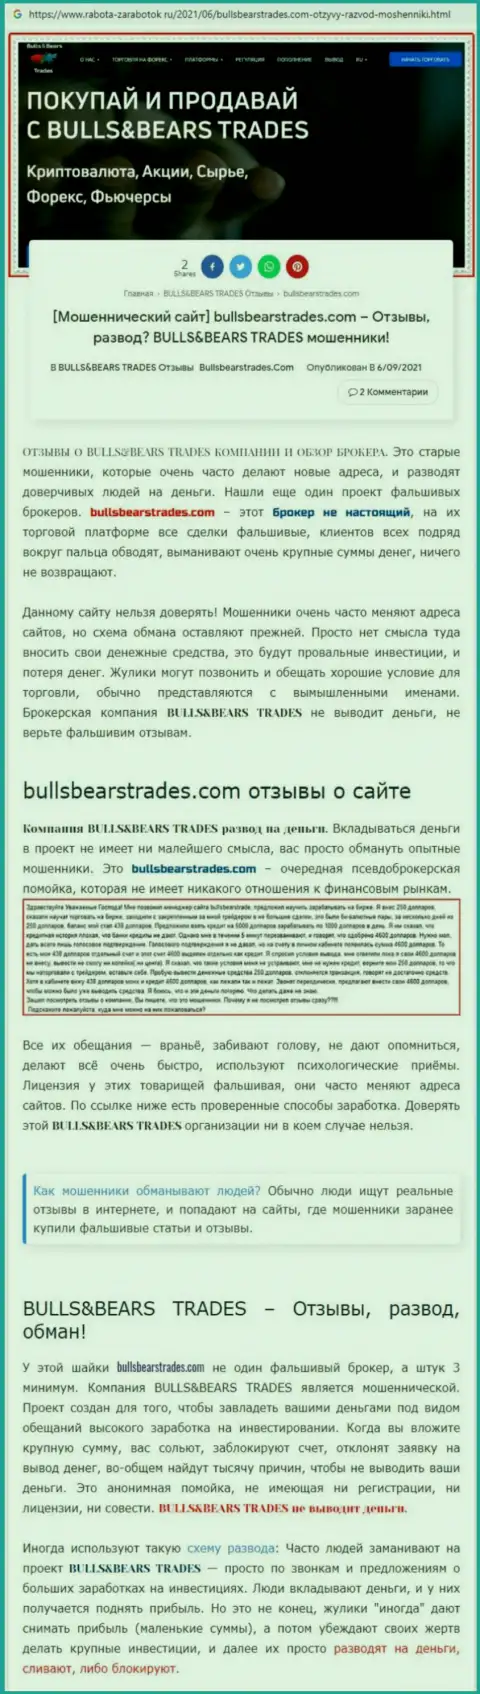 Обзор противозаконно действующей организации BullsBears Trades о том, как обувает клиентов